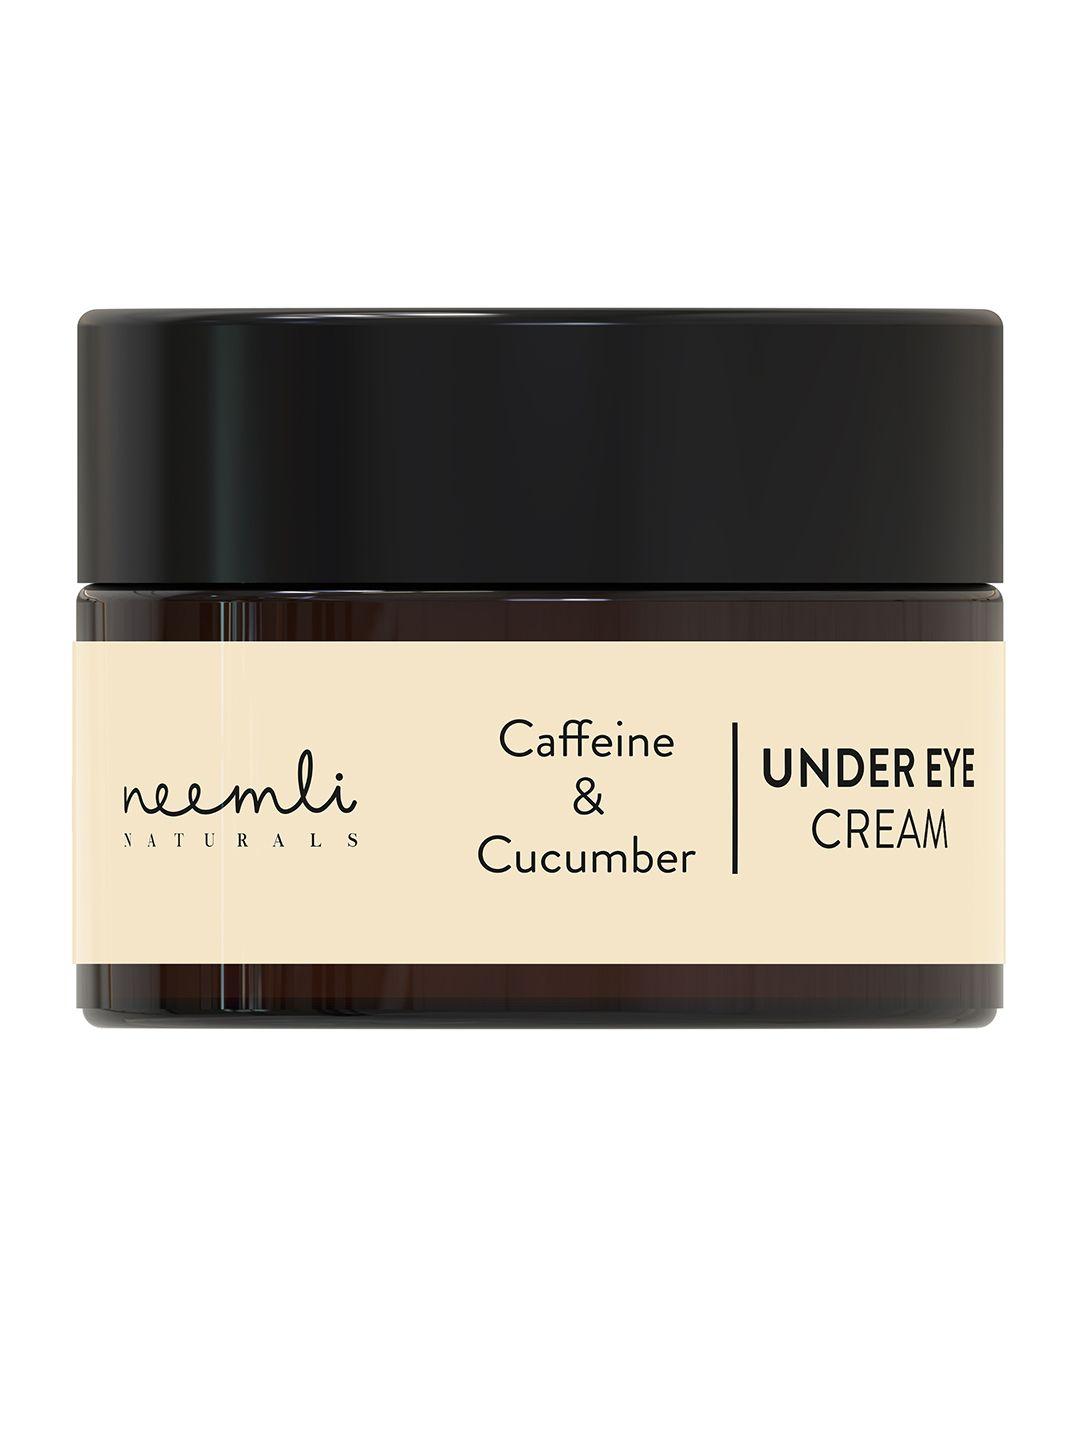 neemli-naturals-caffeine-&-cucumber-under-eye-cream--15-ml